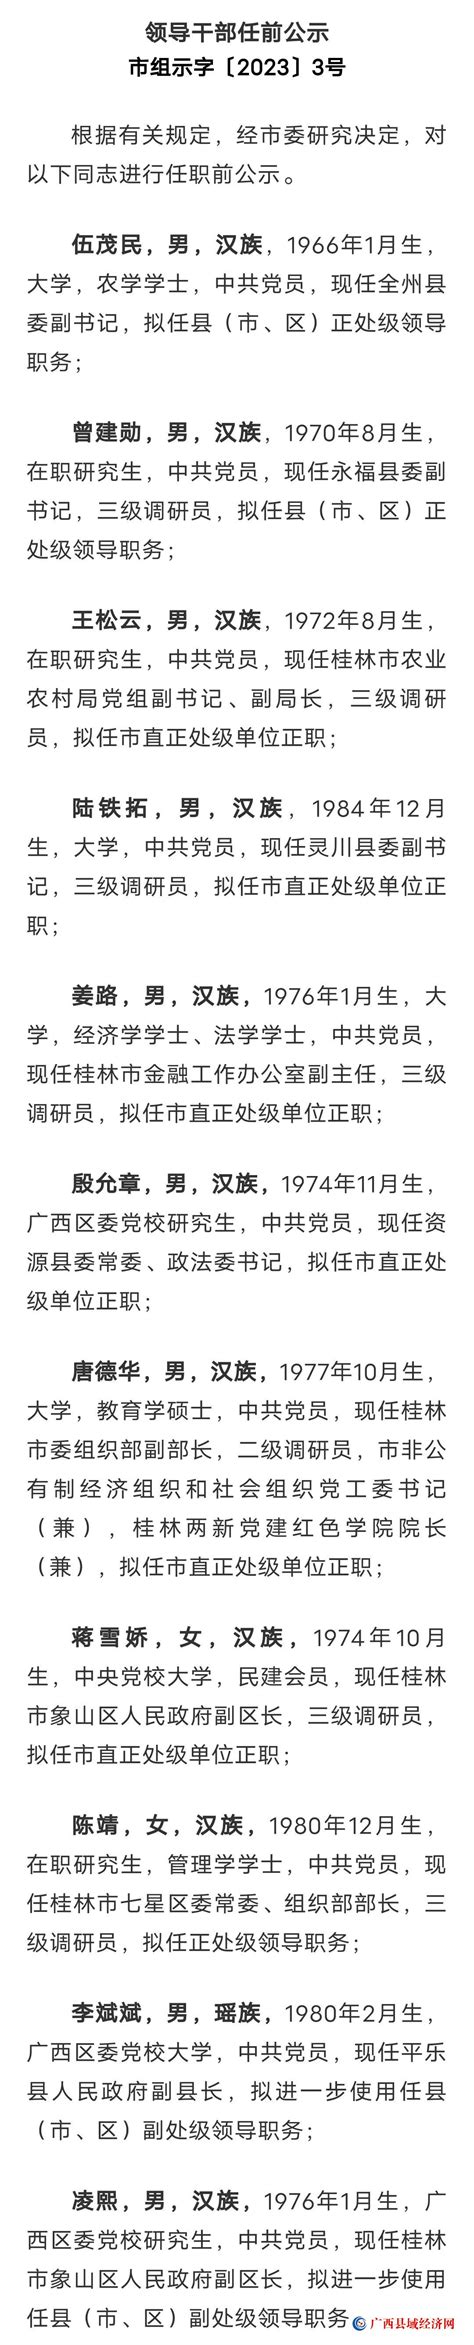 桂林市发布一批处级领导干部任前公示 - 广西县域经济网